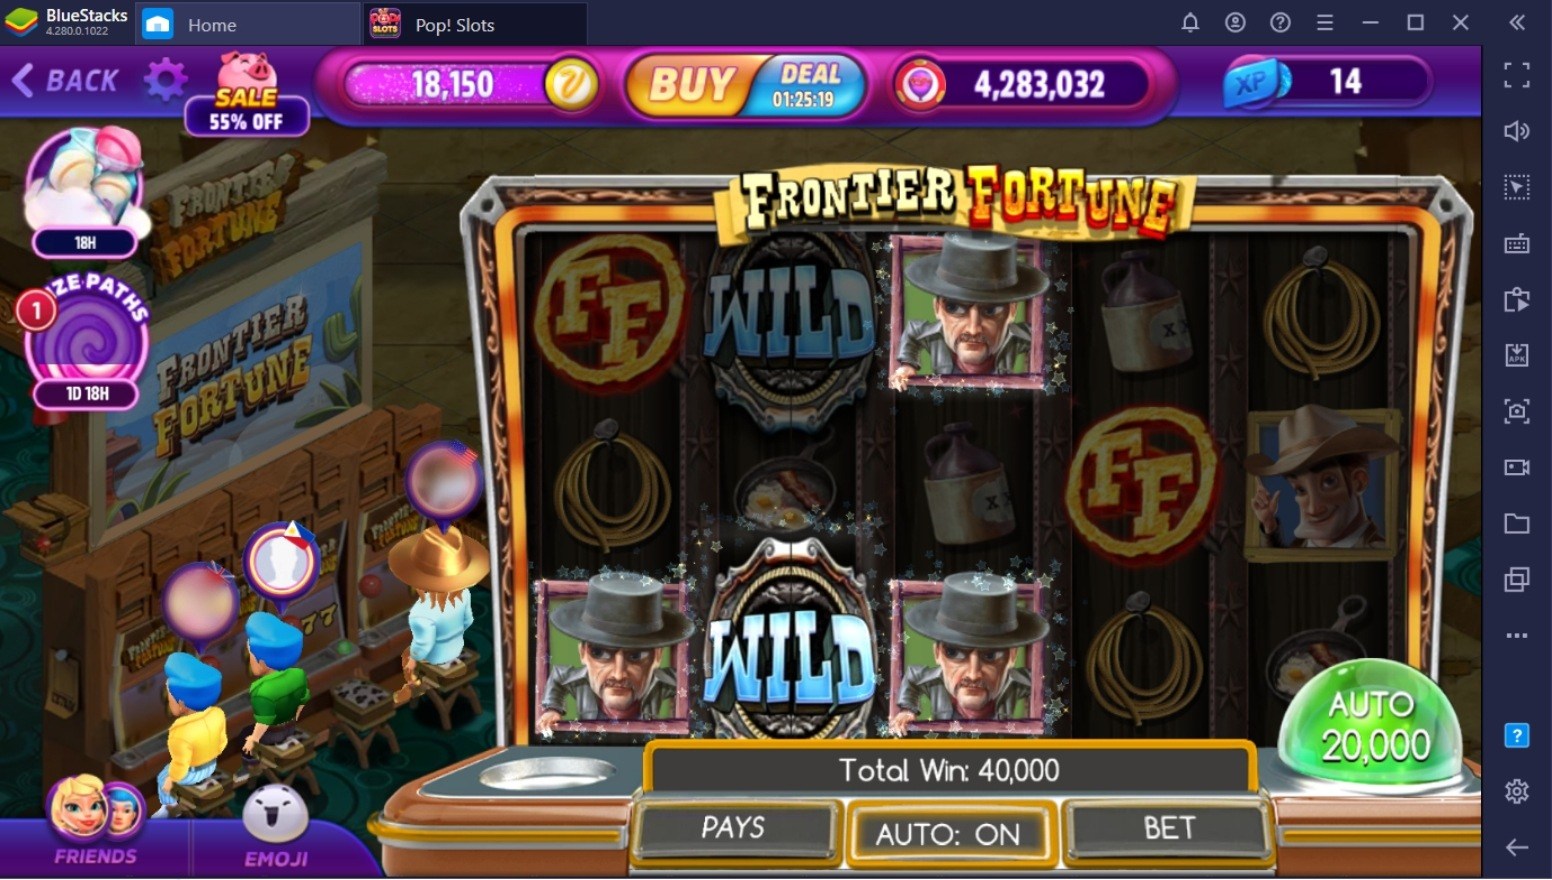 Anfänger-Guide zum Spielen von POP! Slots Vegas Casino Games